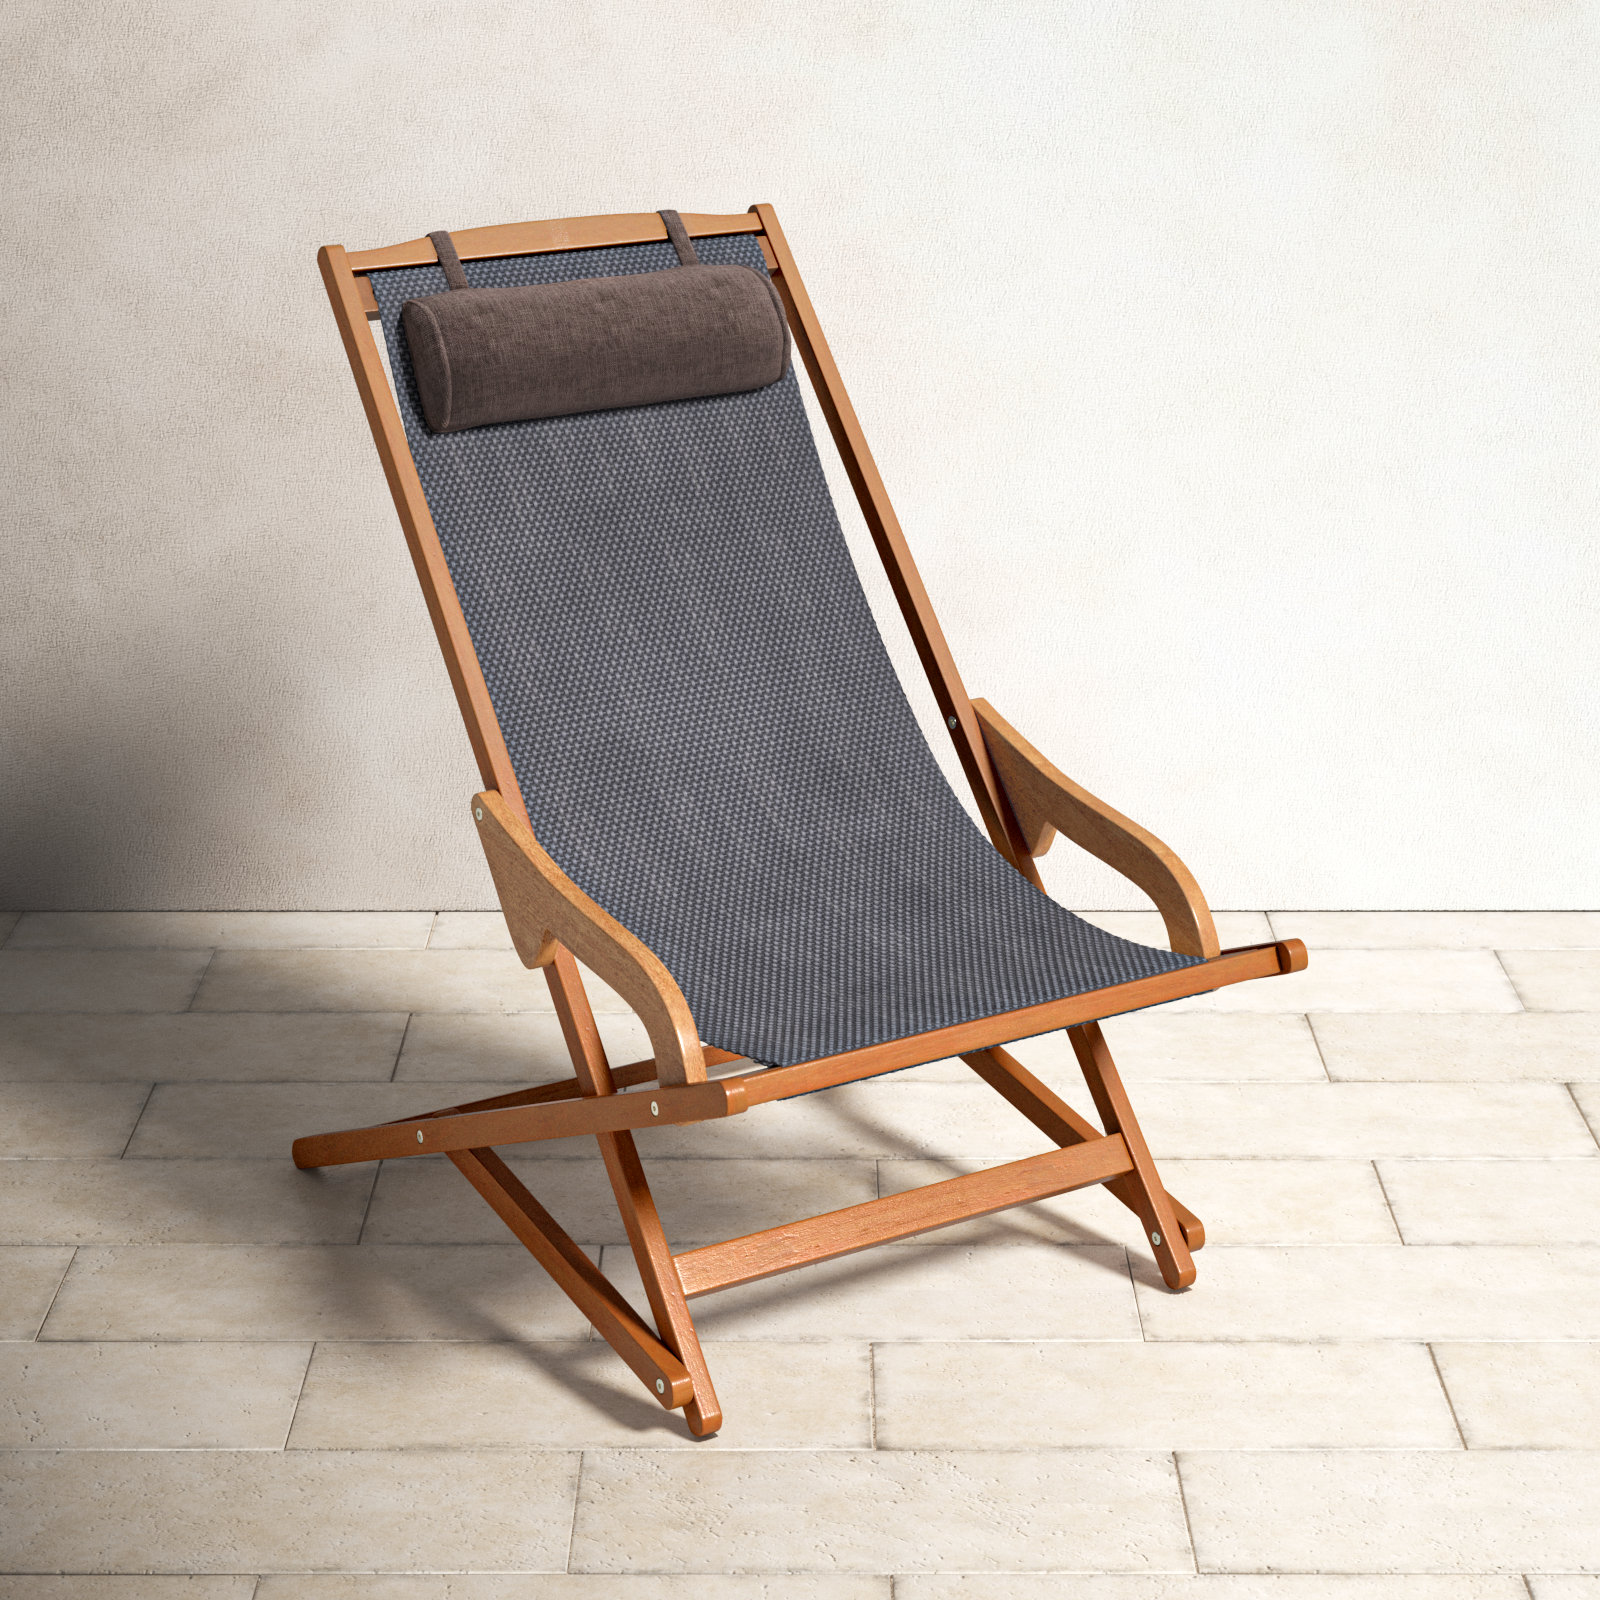 https://assets.wfcdn.com/im/79706666/compr-r85/2546/254645925/fitzhugh-folding-beach-chair-with-cushion.jpg